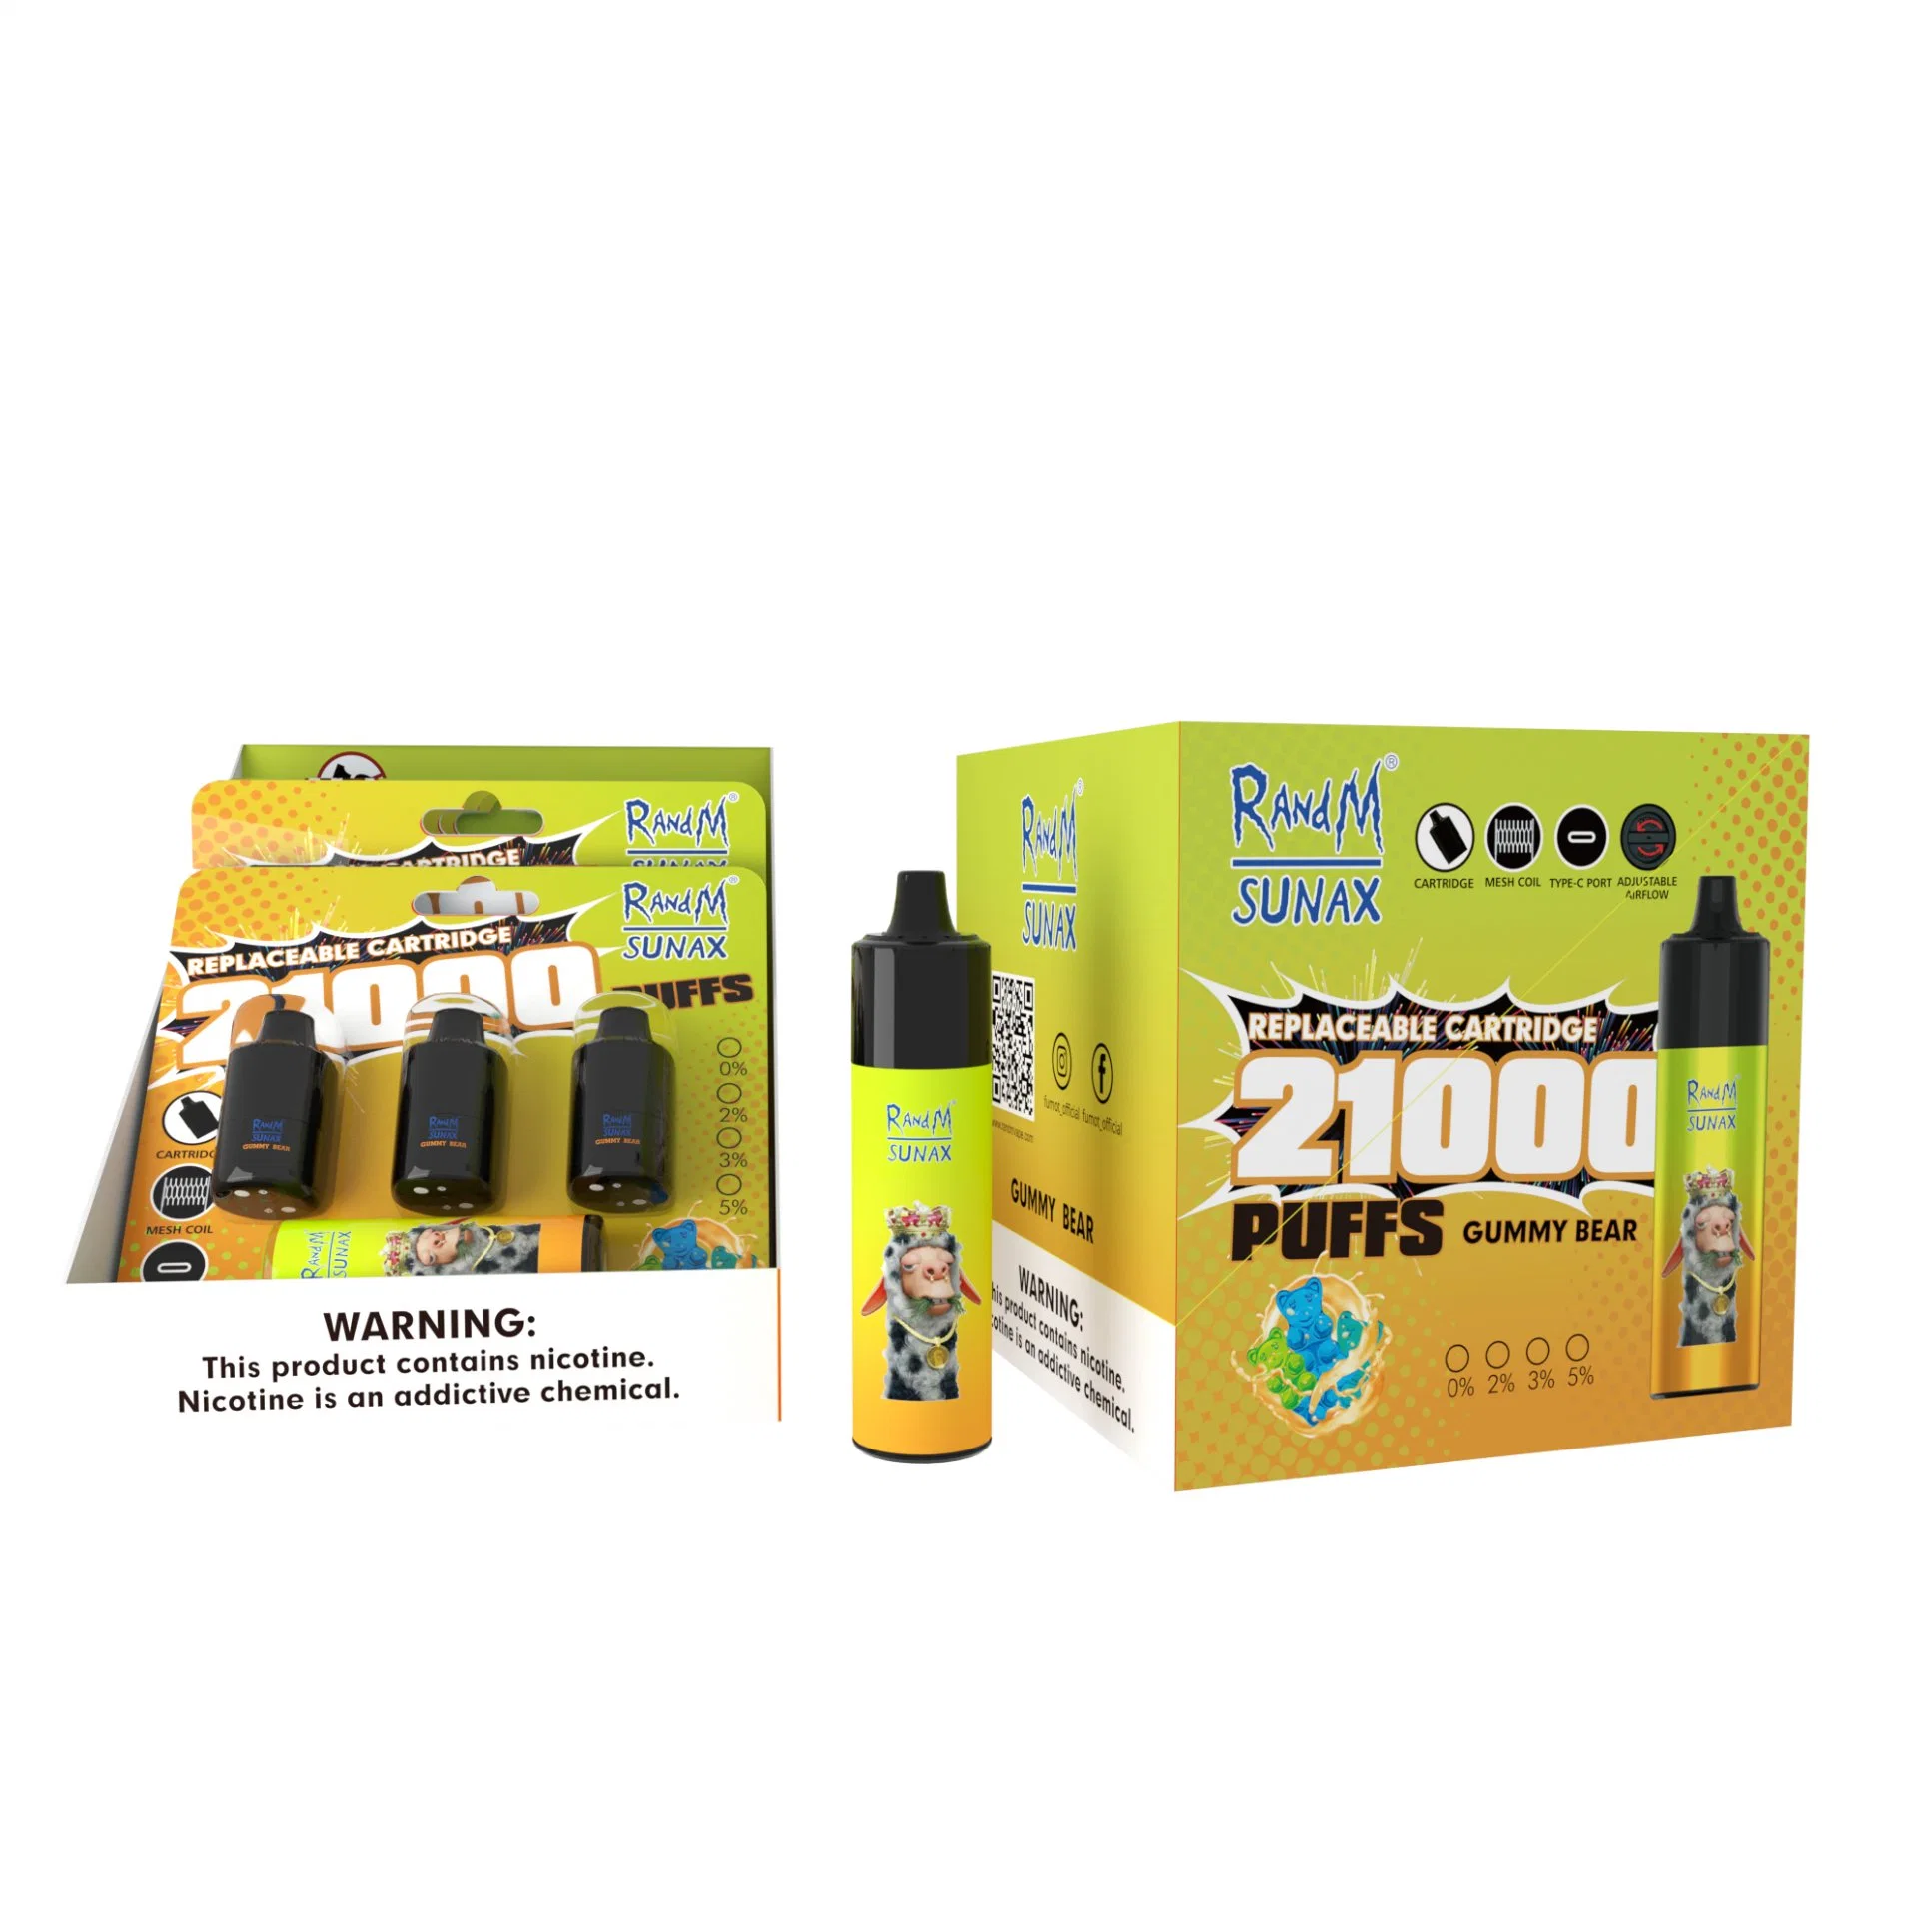 Randm Sunax 21000 Puffs Vape Pen Electronic Cigarette Dry Herb Vaporizer